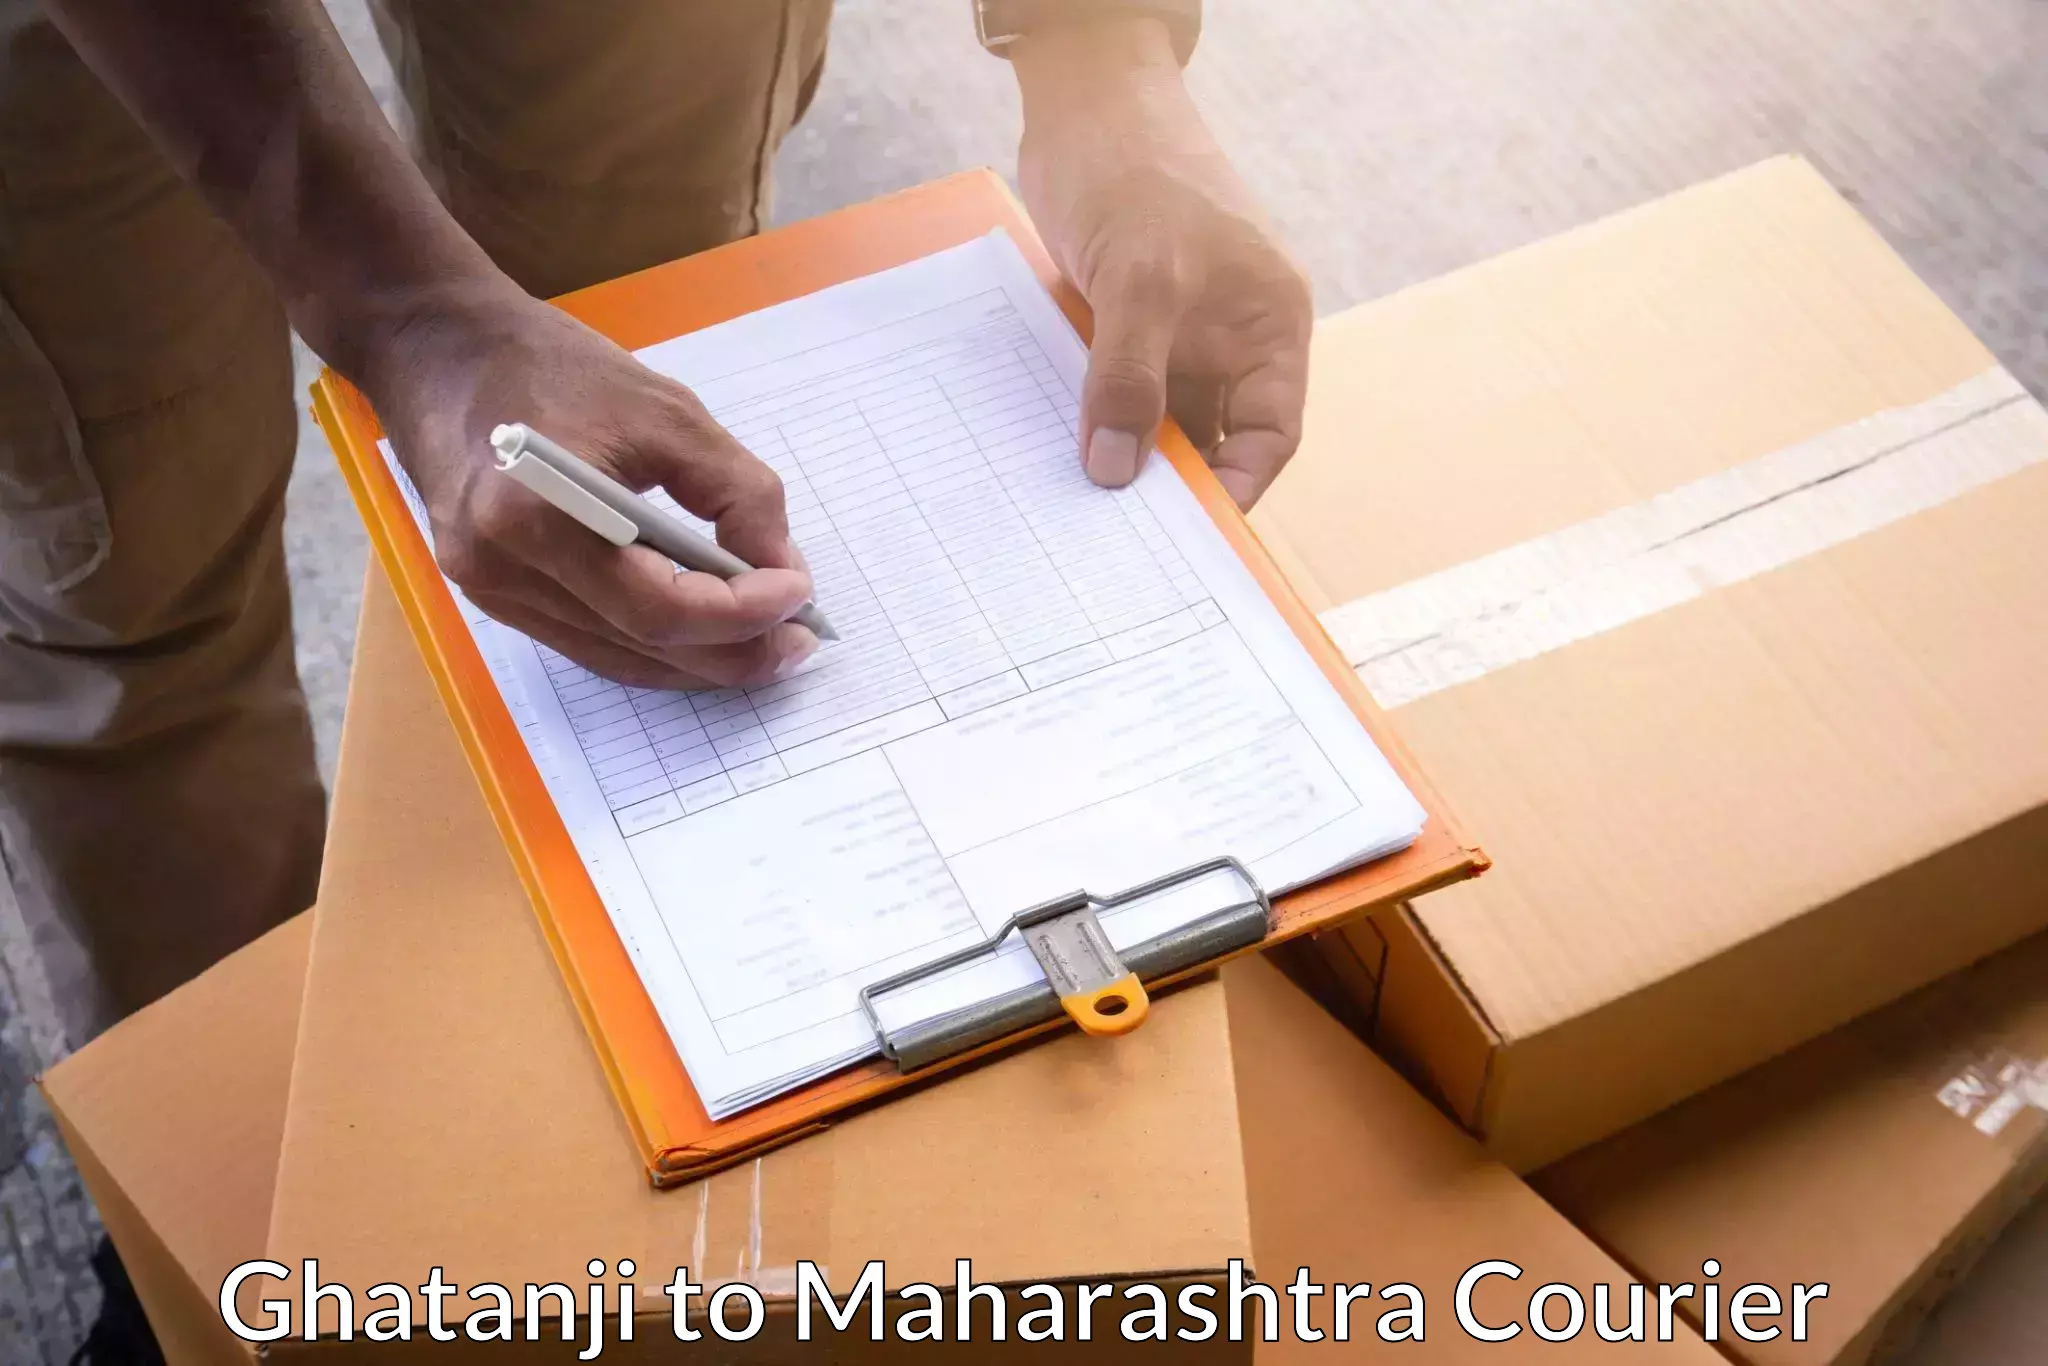 Door-to-door freight service Ghatanji to Maharashtra